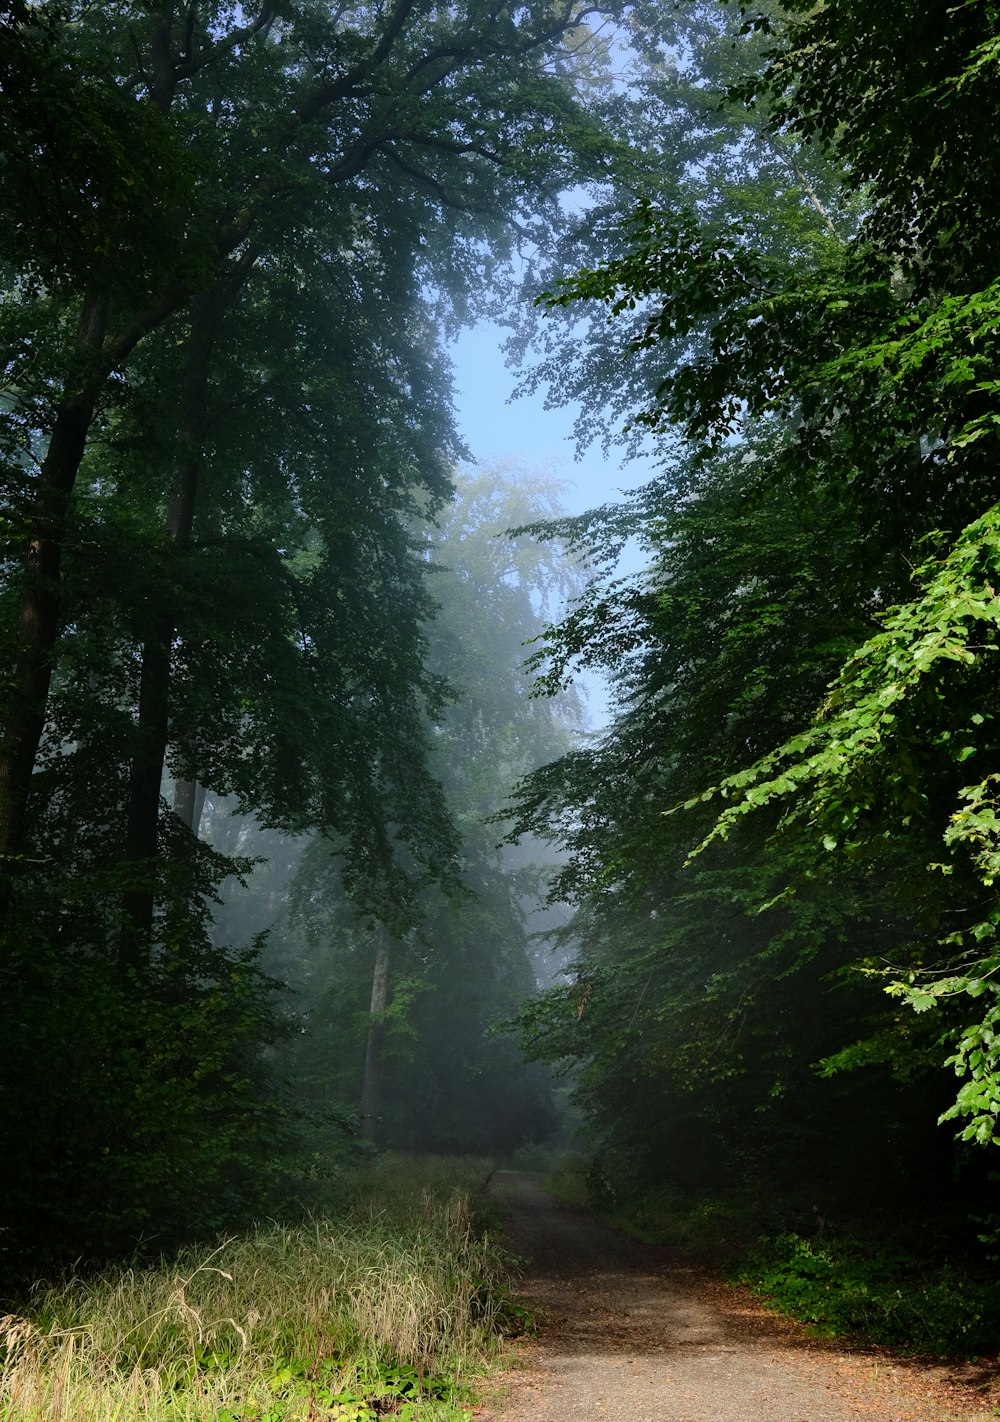 Una strada sterrata in un bosco